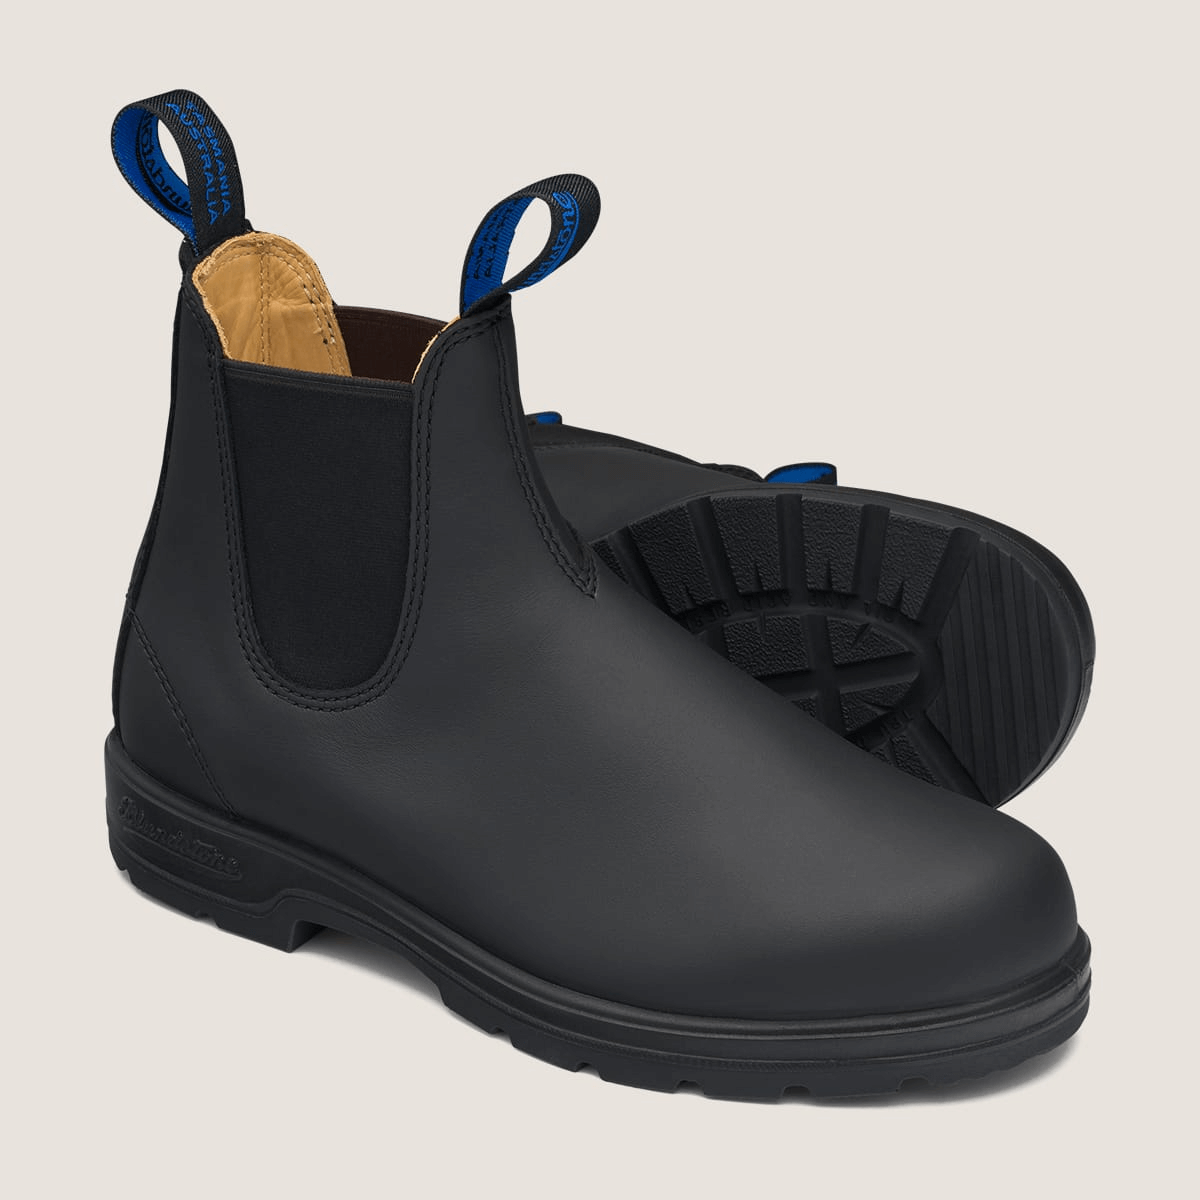 blundstone waterproof chelsea boots